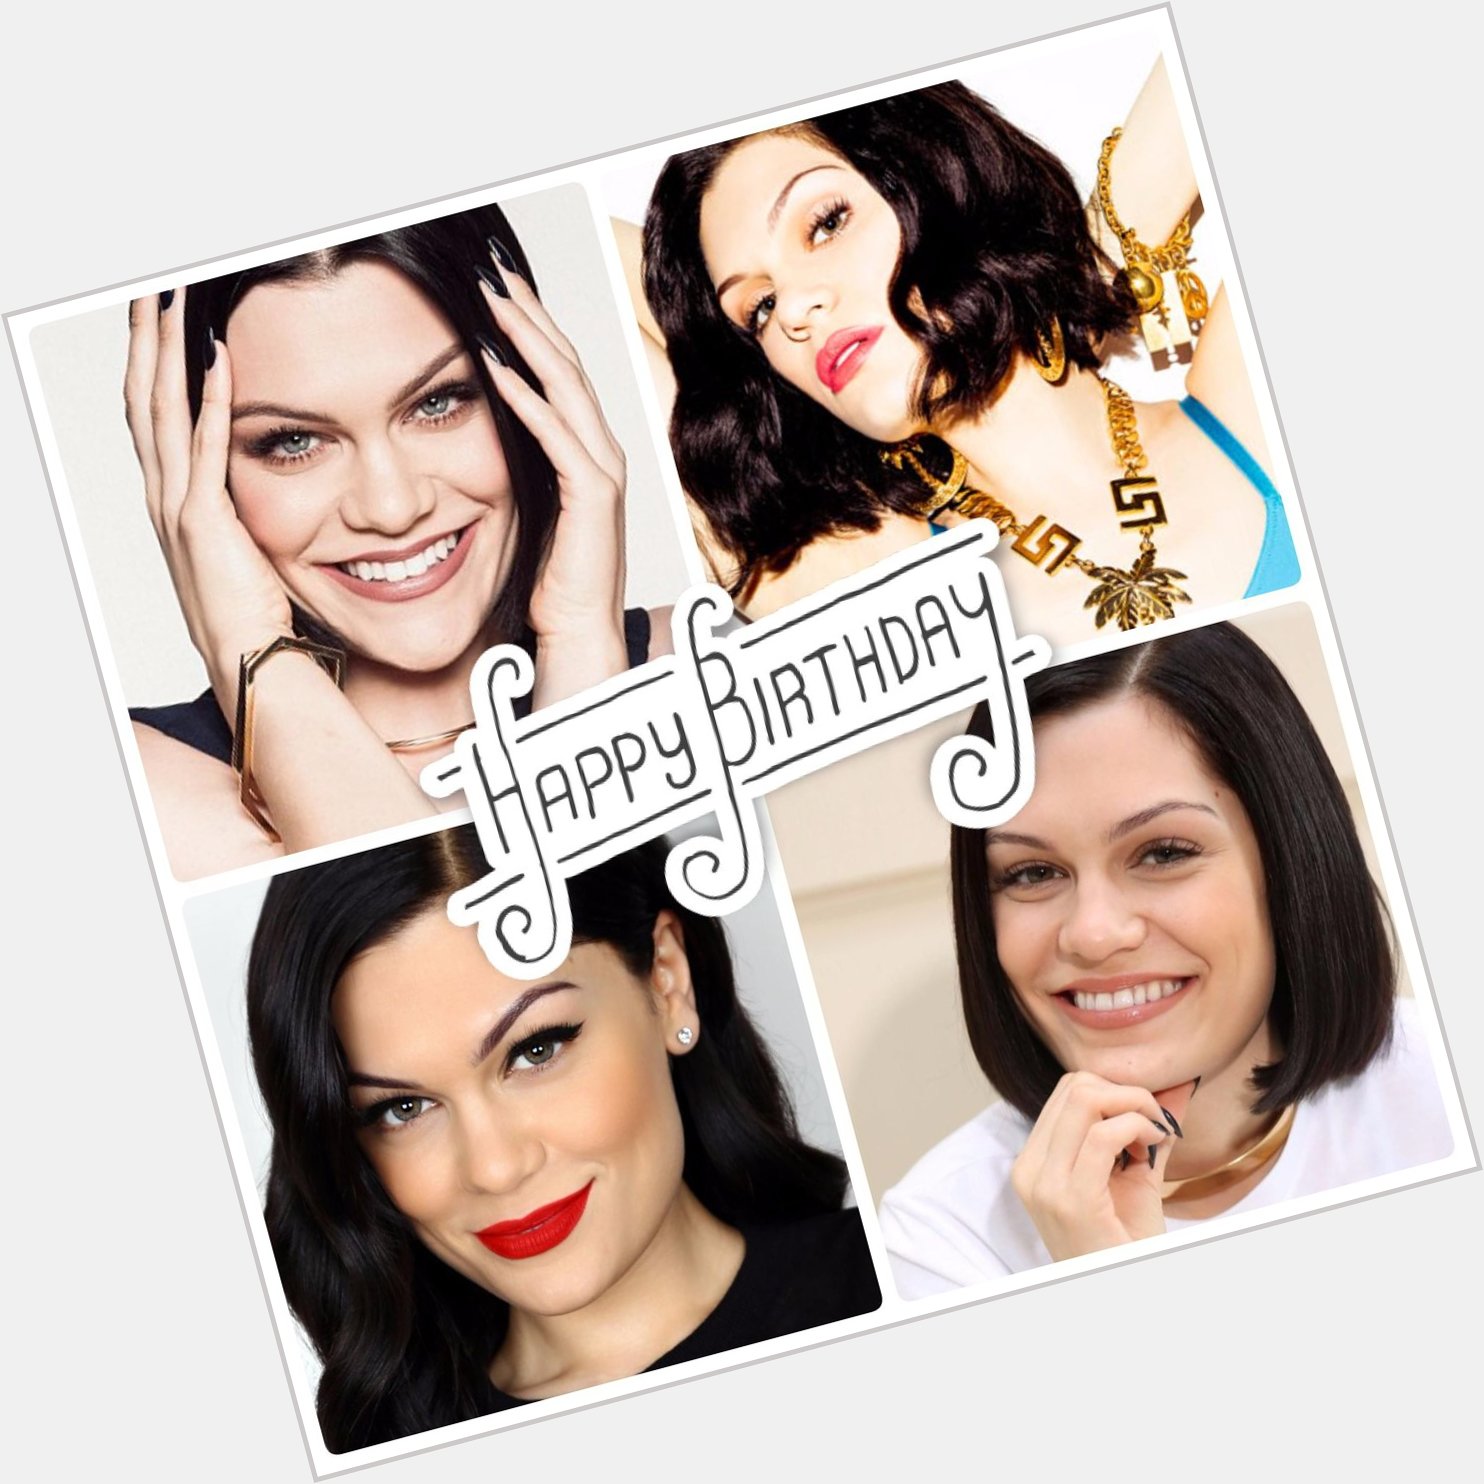 It\s Jessie J\s birthday today!!
Help us wish her a Happy Birthday. 